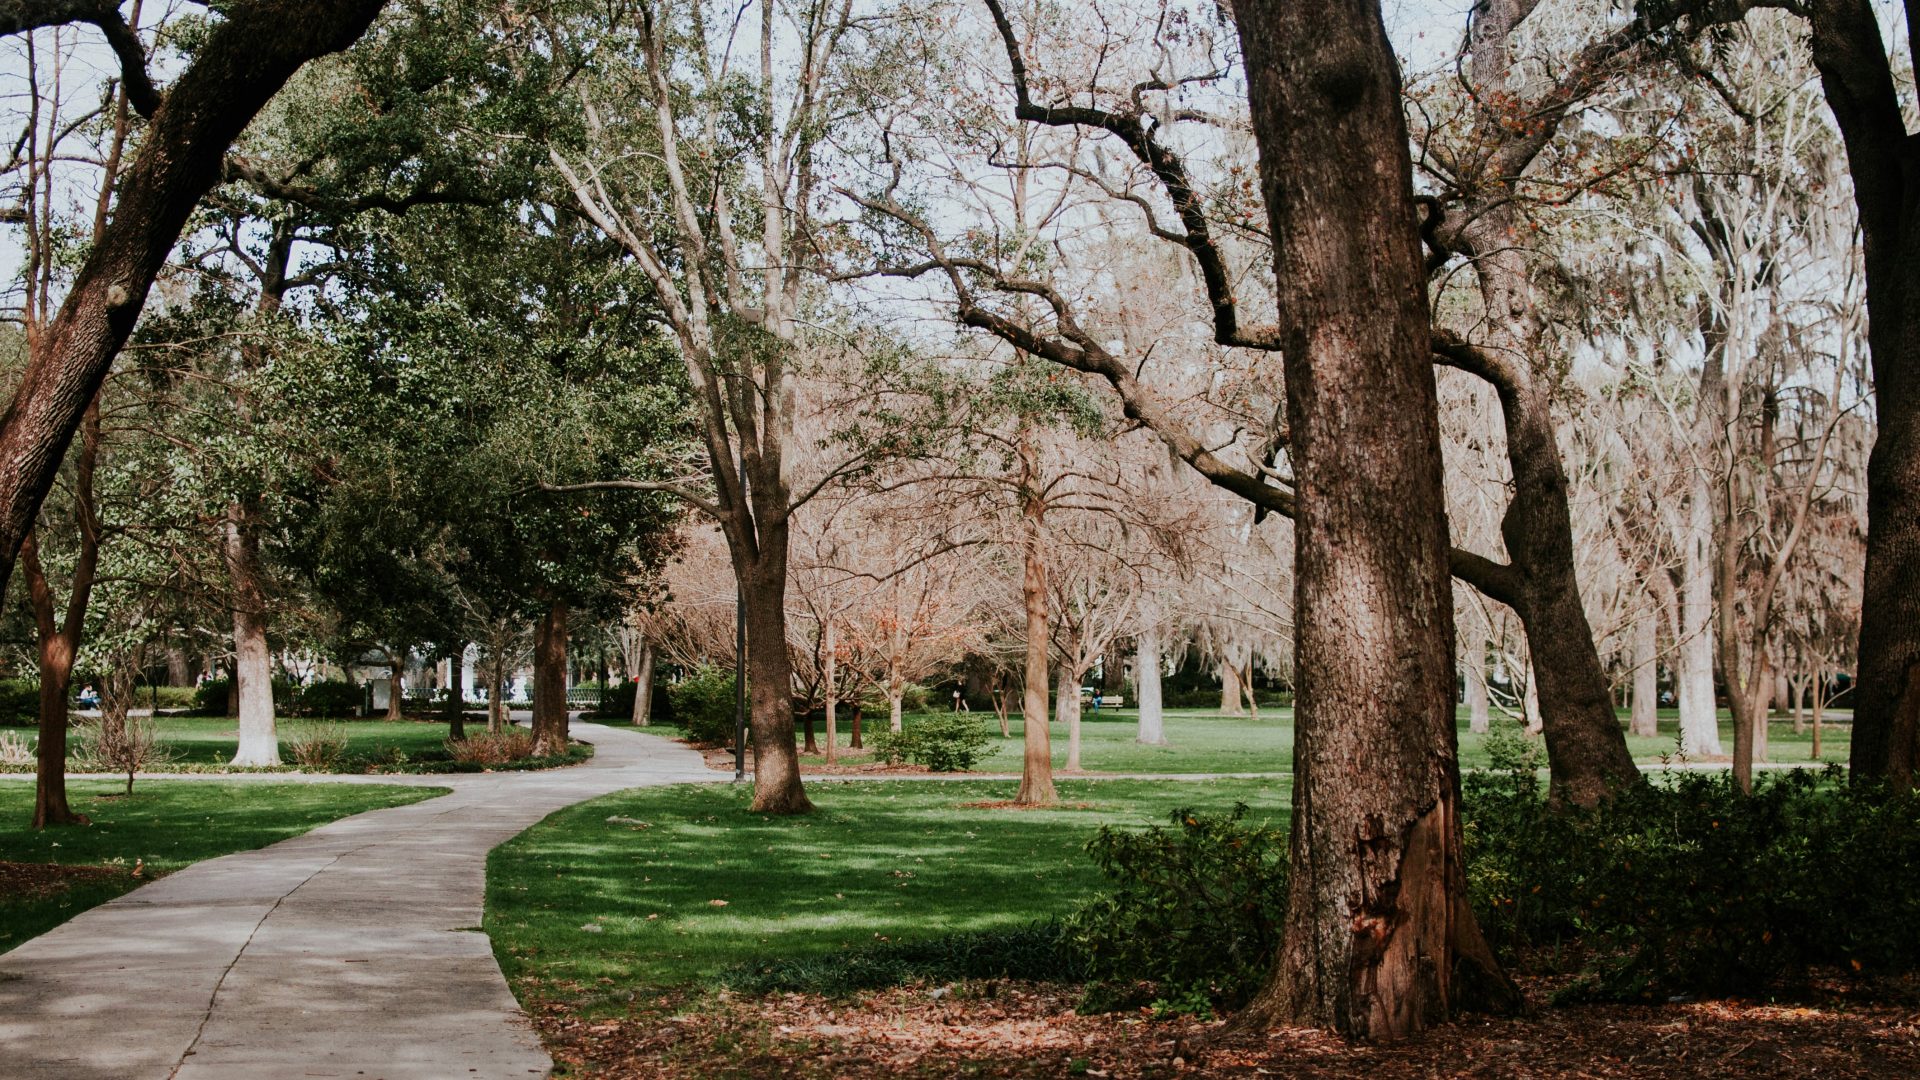 photo of pathway between trees